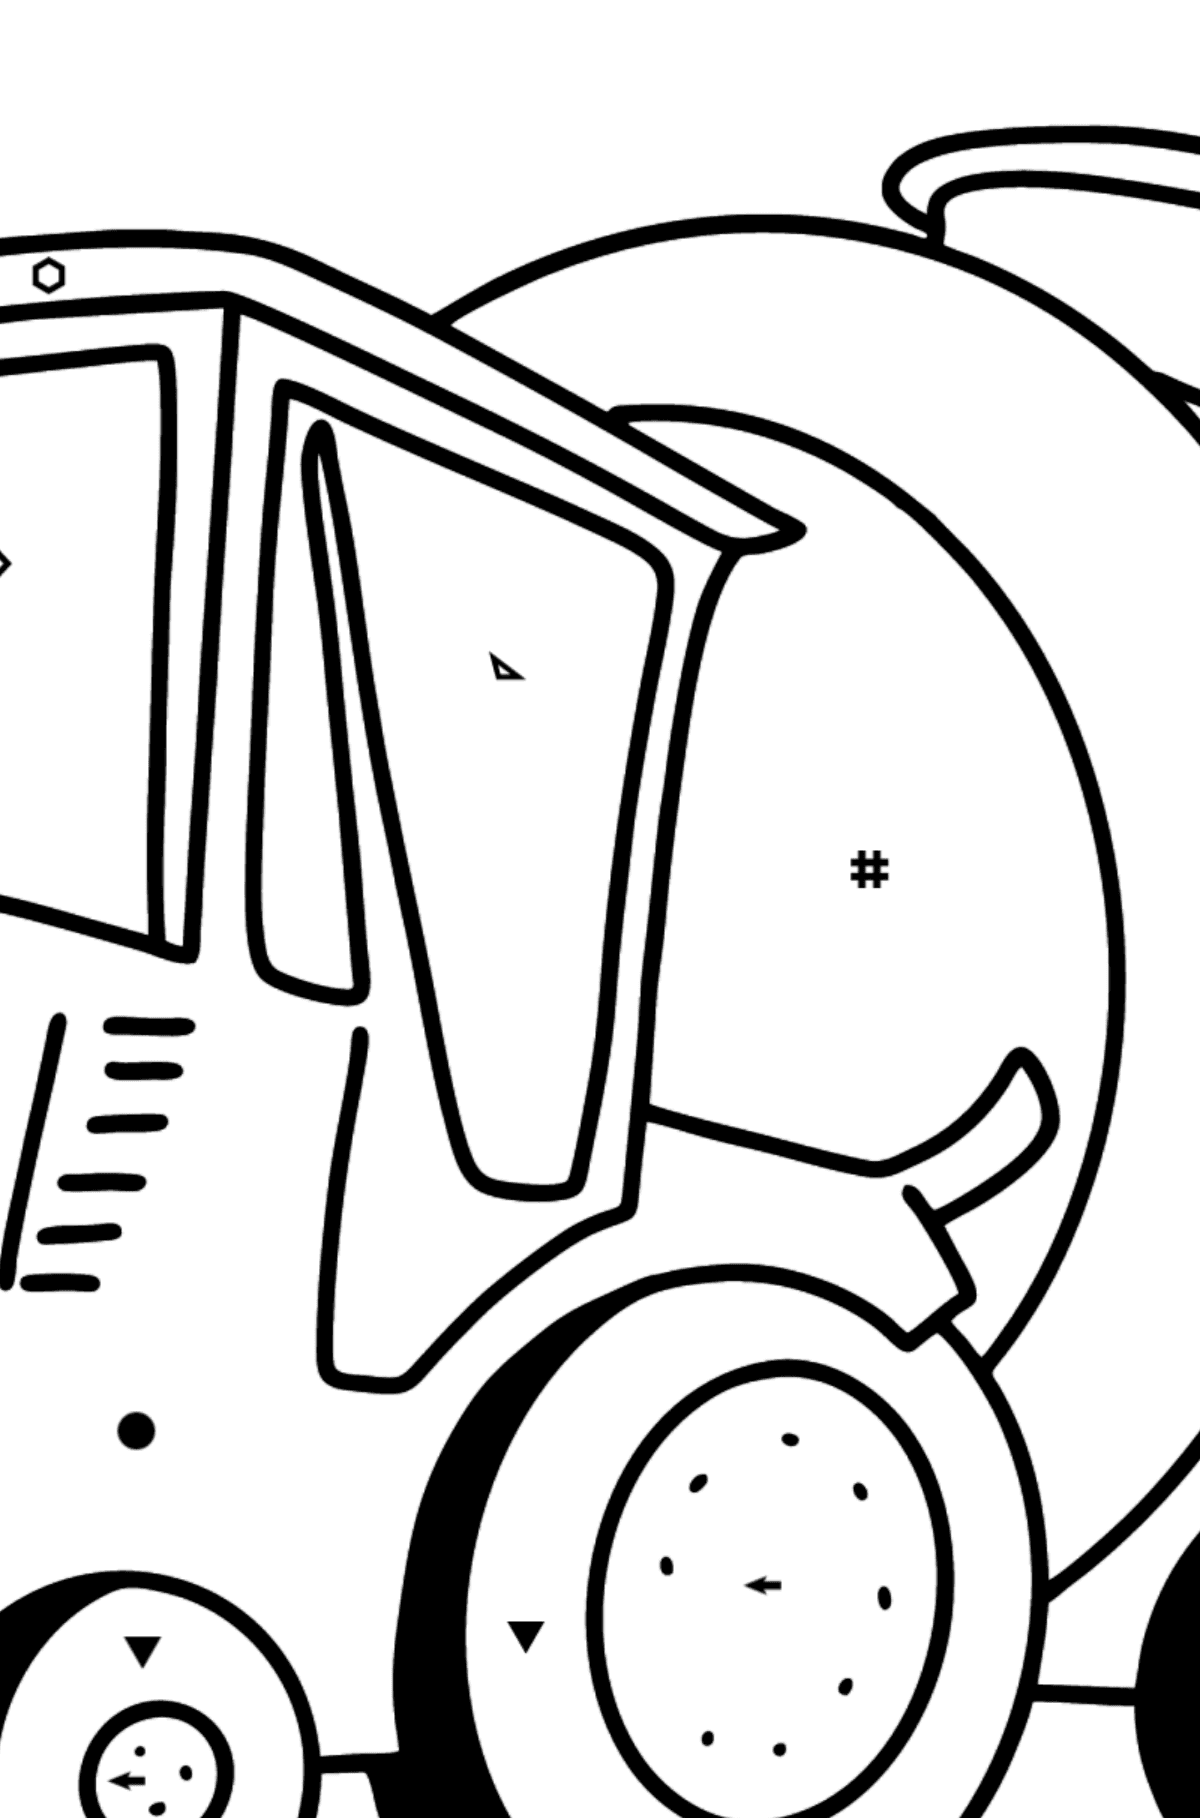 Coloriage - Tracteur avec remorque à eau - Coloriage par Symboles pour les Enfants